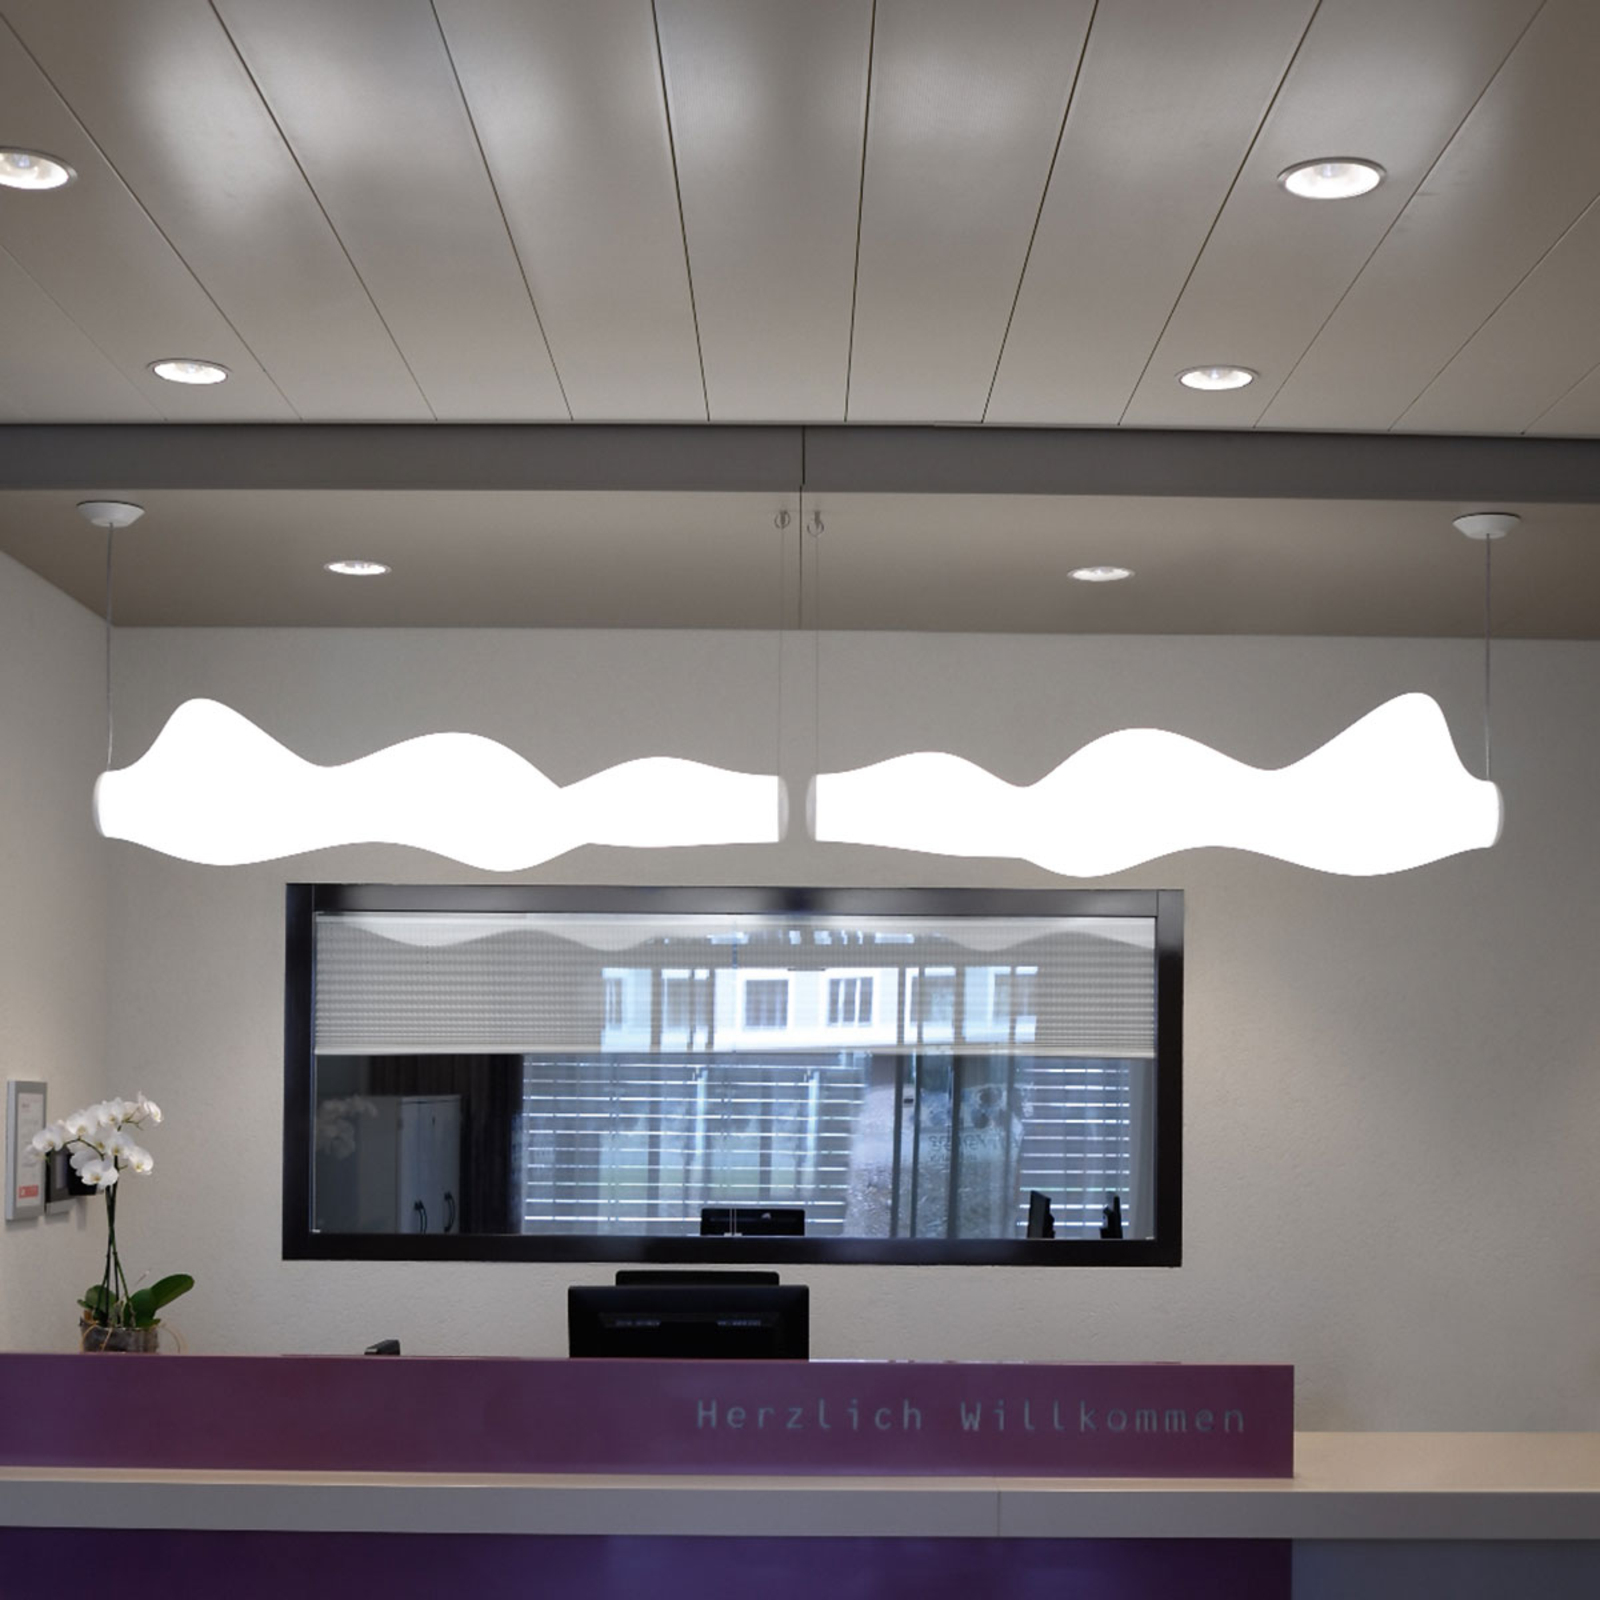 Centro XL - lampe encastrée LED efficace, blanche